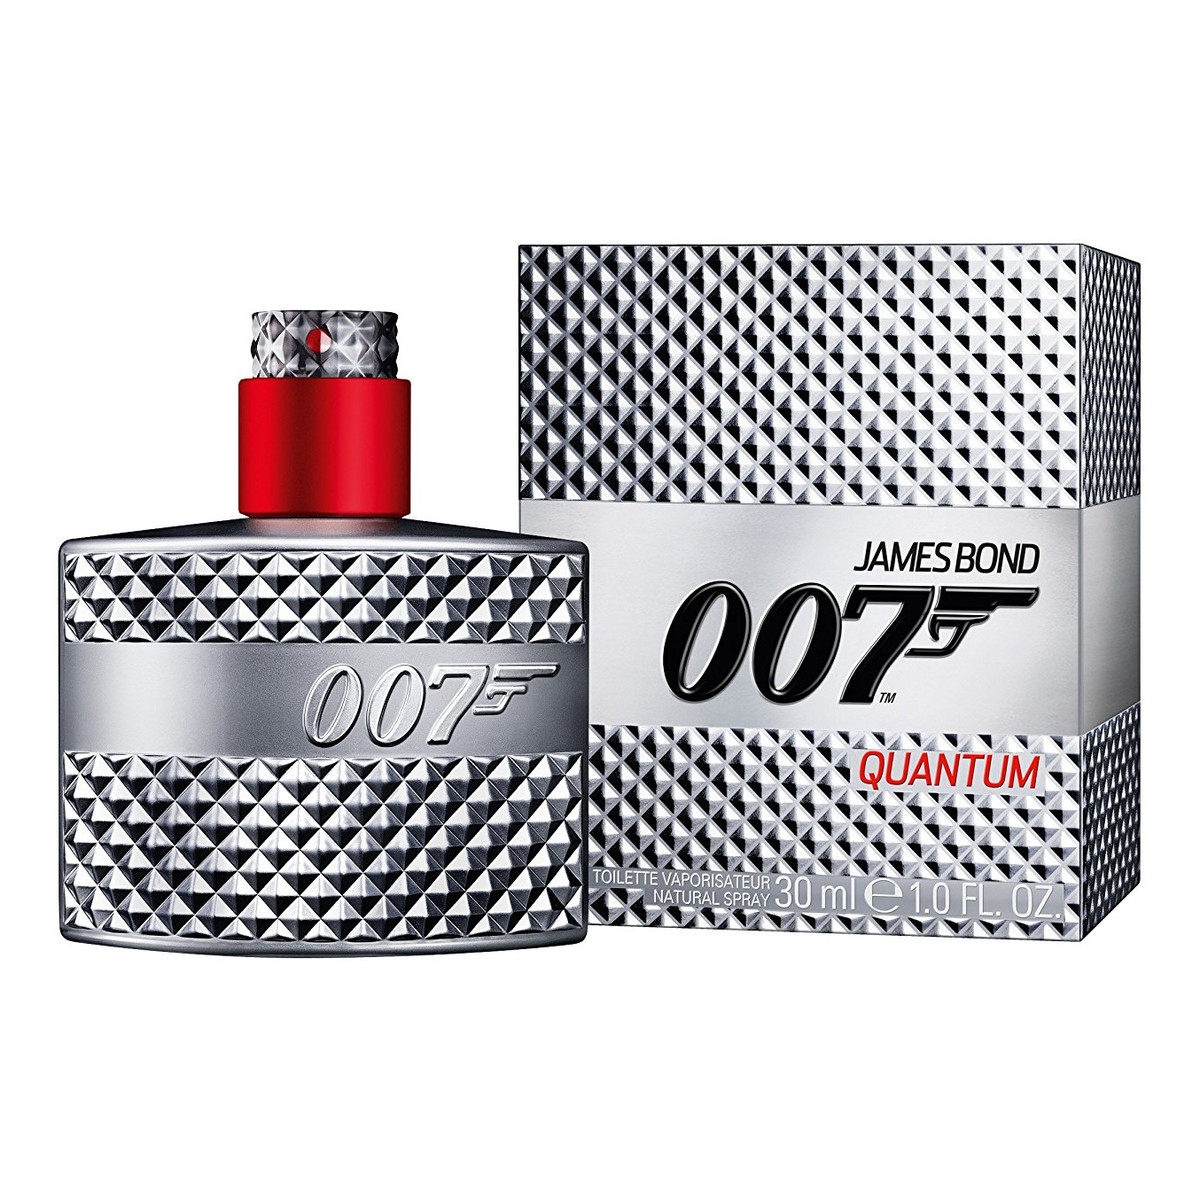 James Bond 007 Quantum woda toaletowa dla mężczyzn 30ml